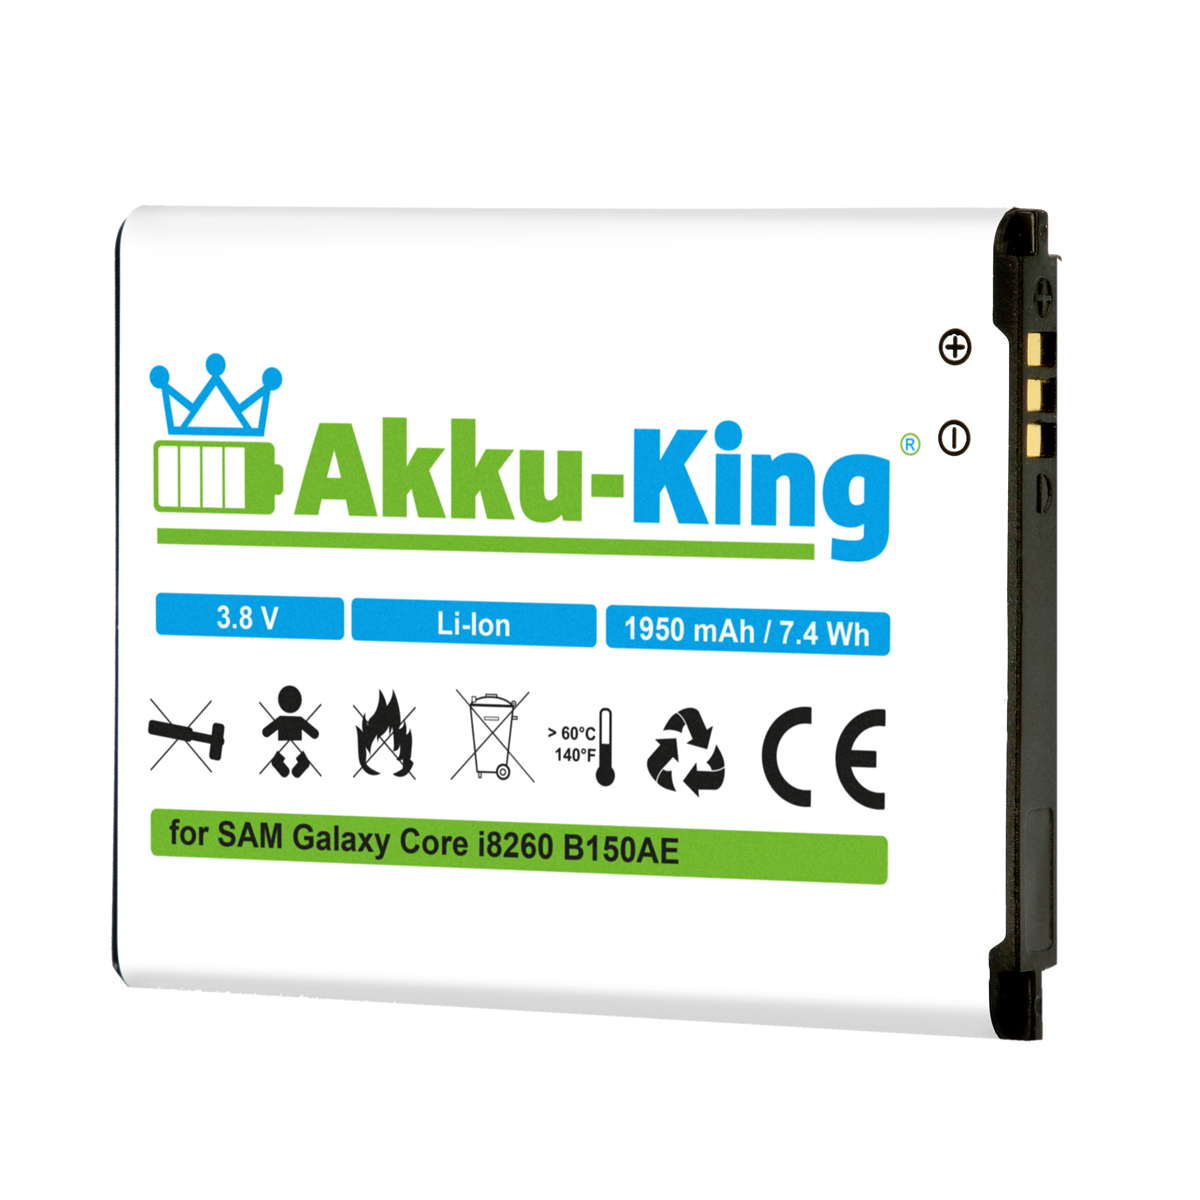 AKKU-KING Akku 1950mAh Li-Ion kompatibel Volt, Handy-Akku, Samsung B150AE 3.8 mit